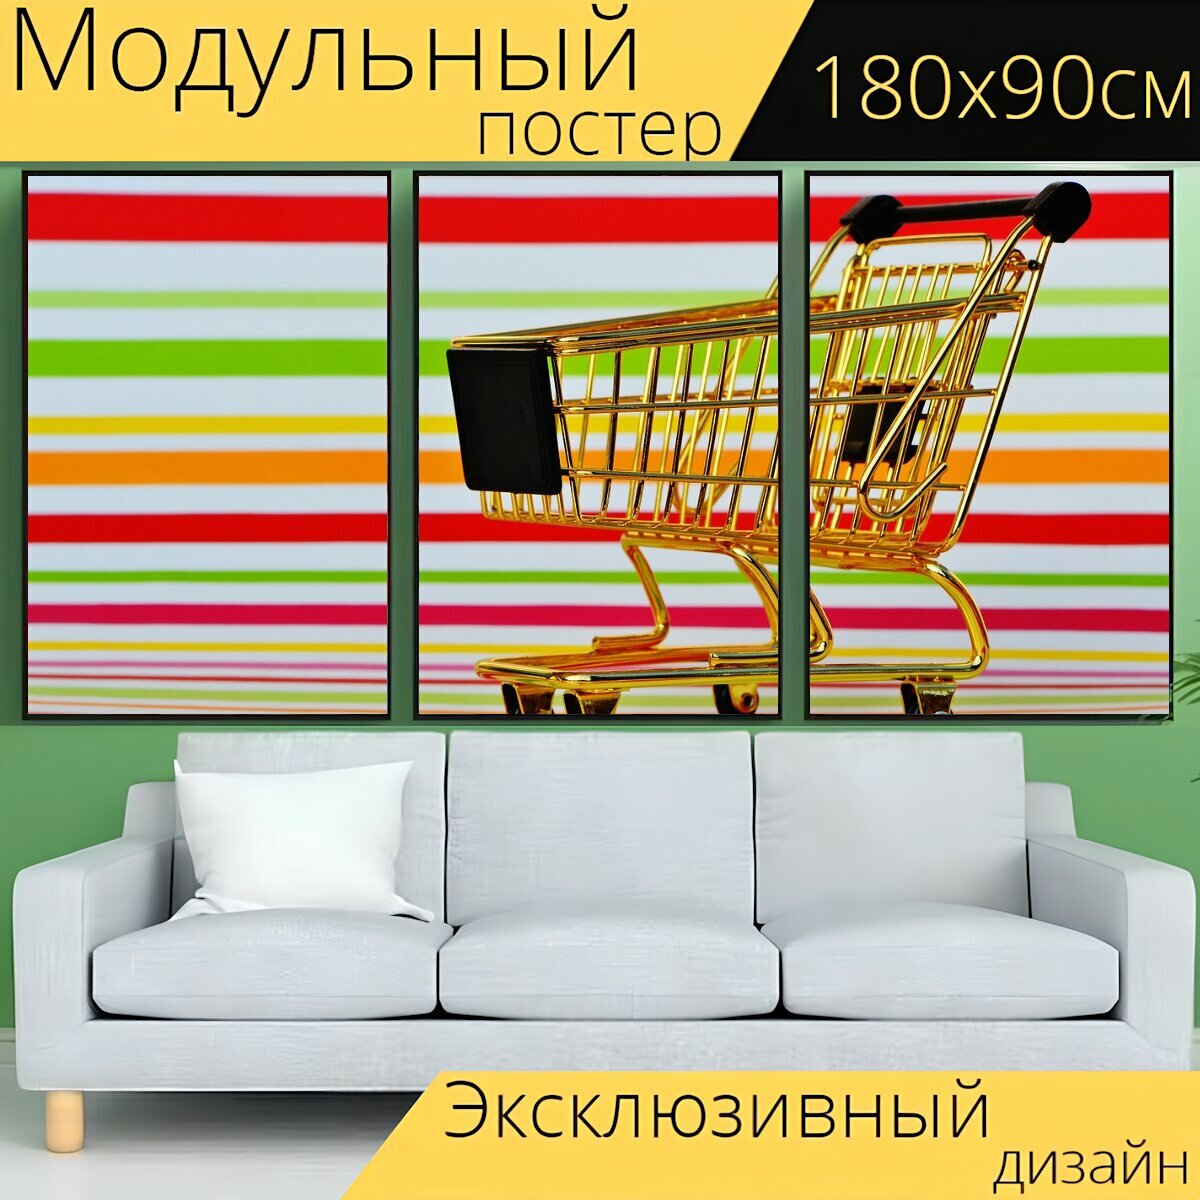 Модульный постер "Торговое предприятие, поход по магазинам, покупка" 180 x 90 см. для интерьера